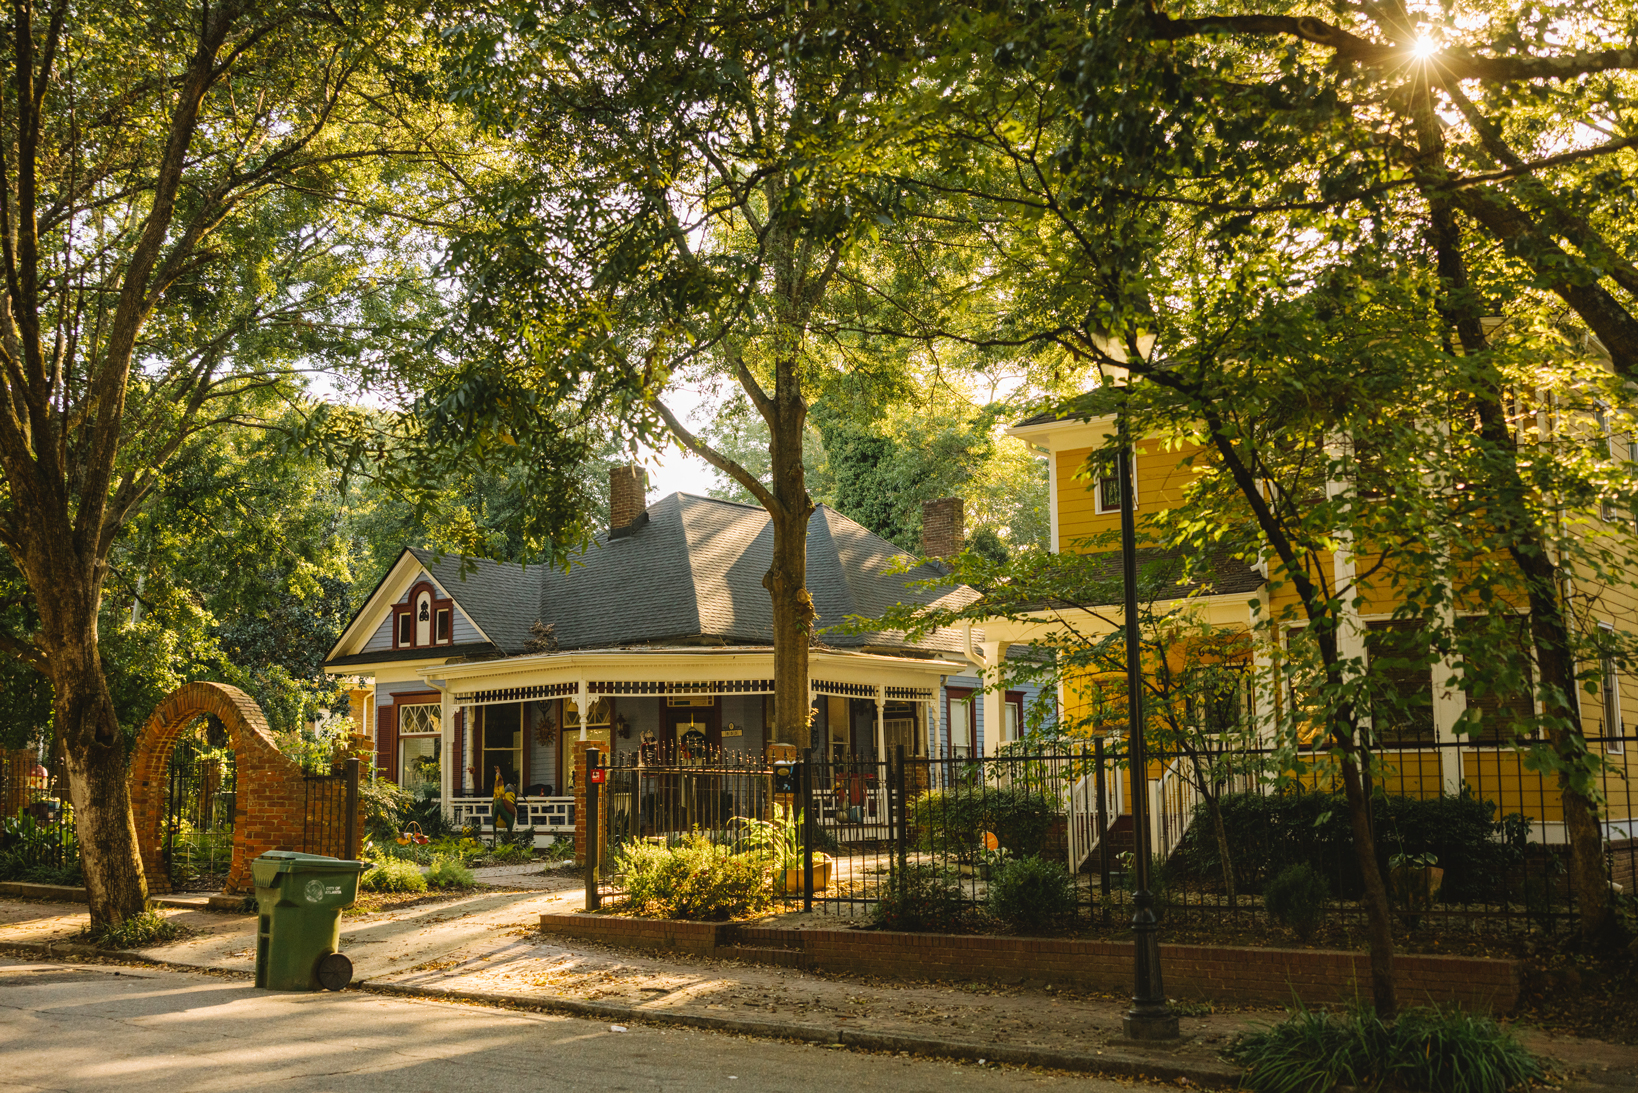 Victorian houses in the Westside neighborhood in Atlanta Georgia.